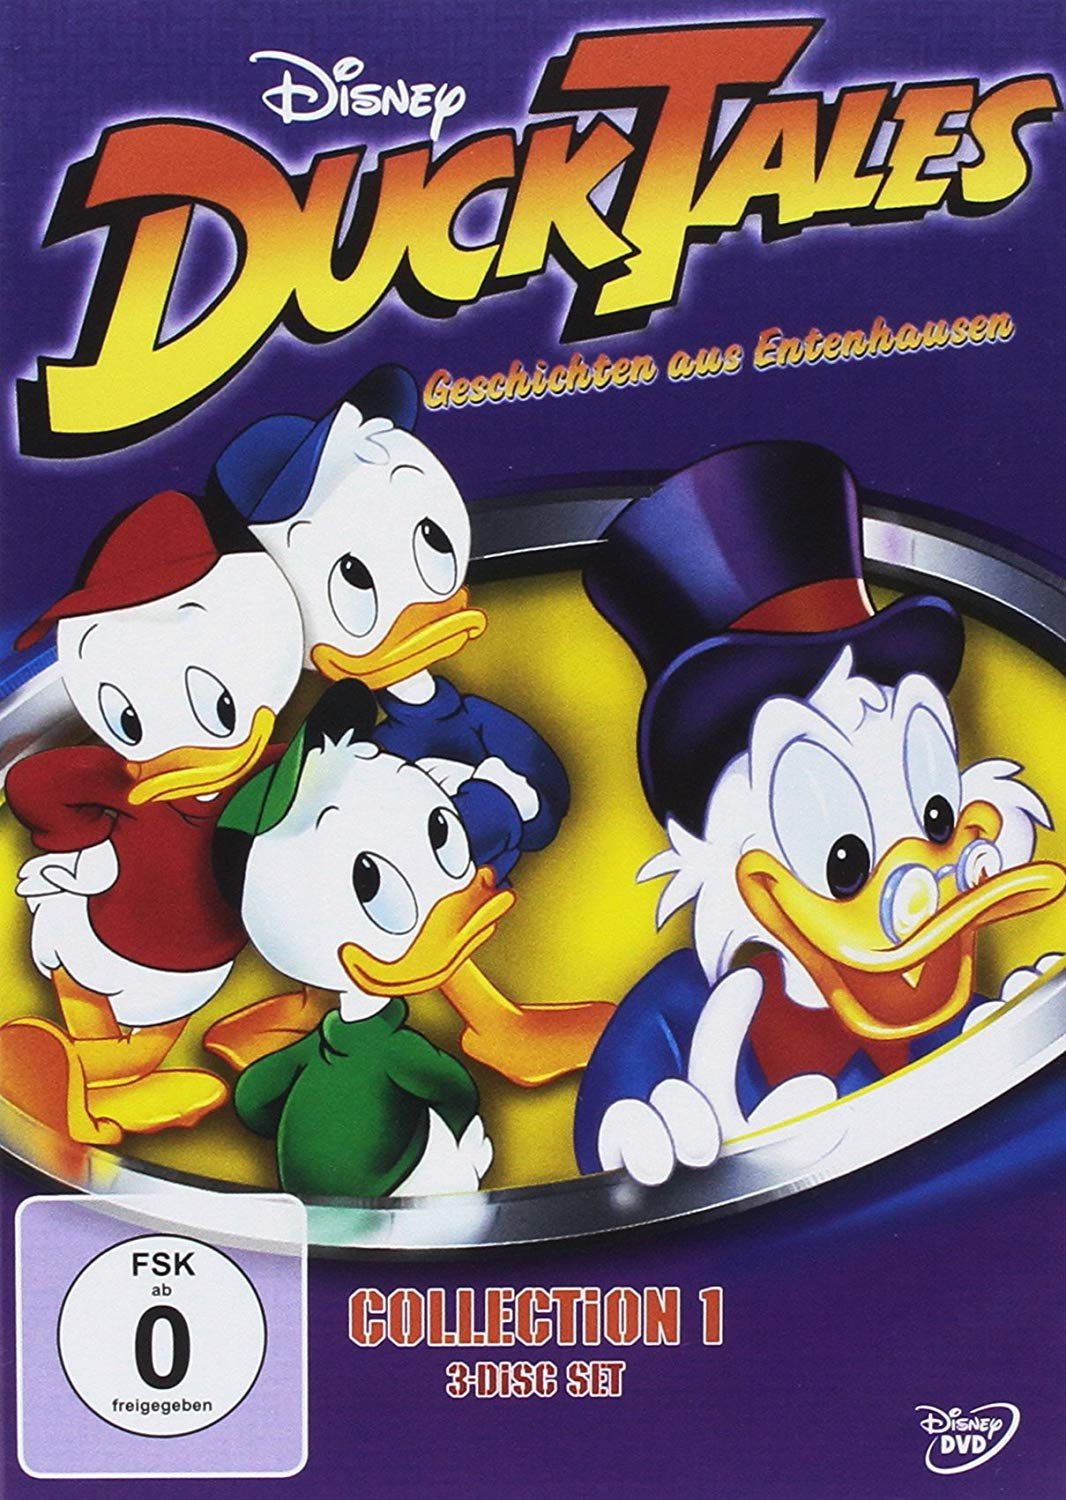 Kinderserie der 90er: Ducktales